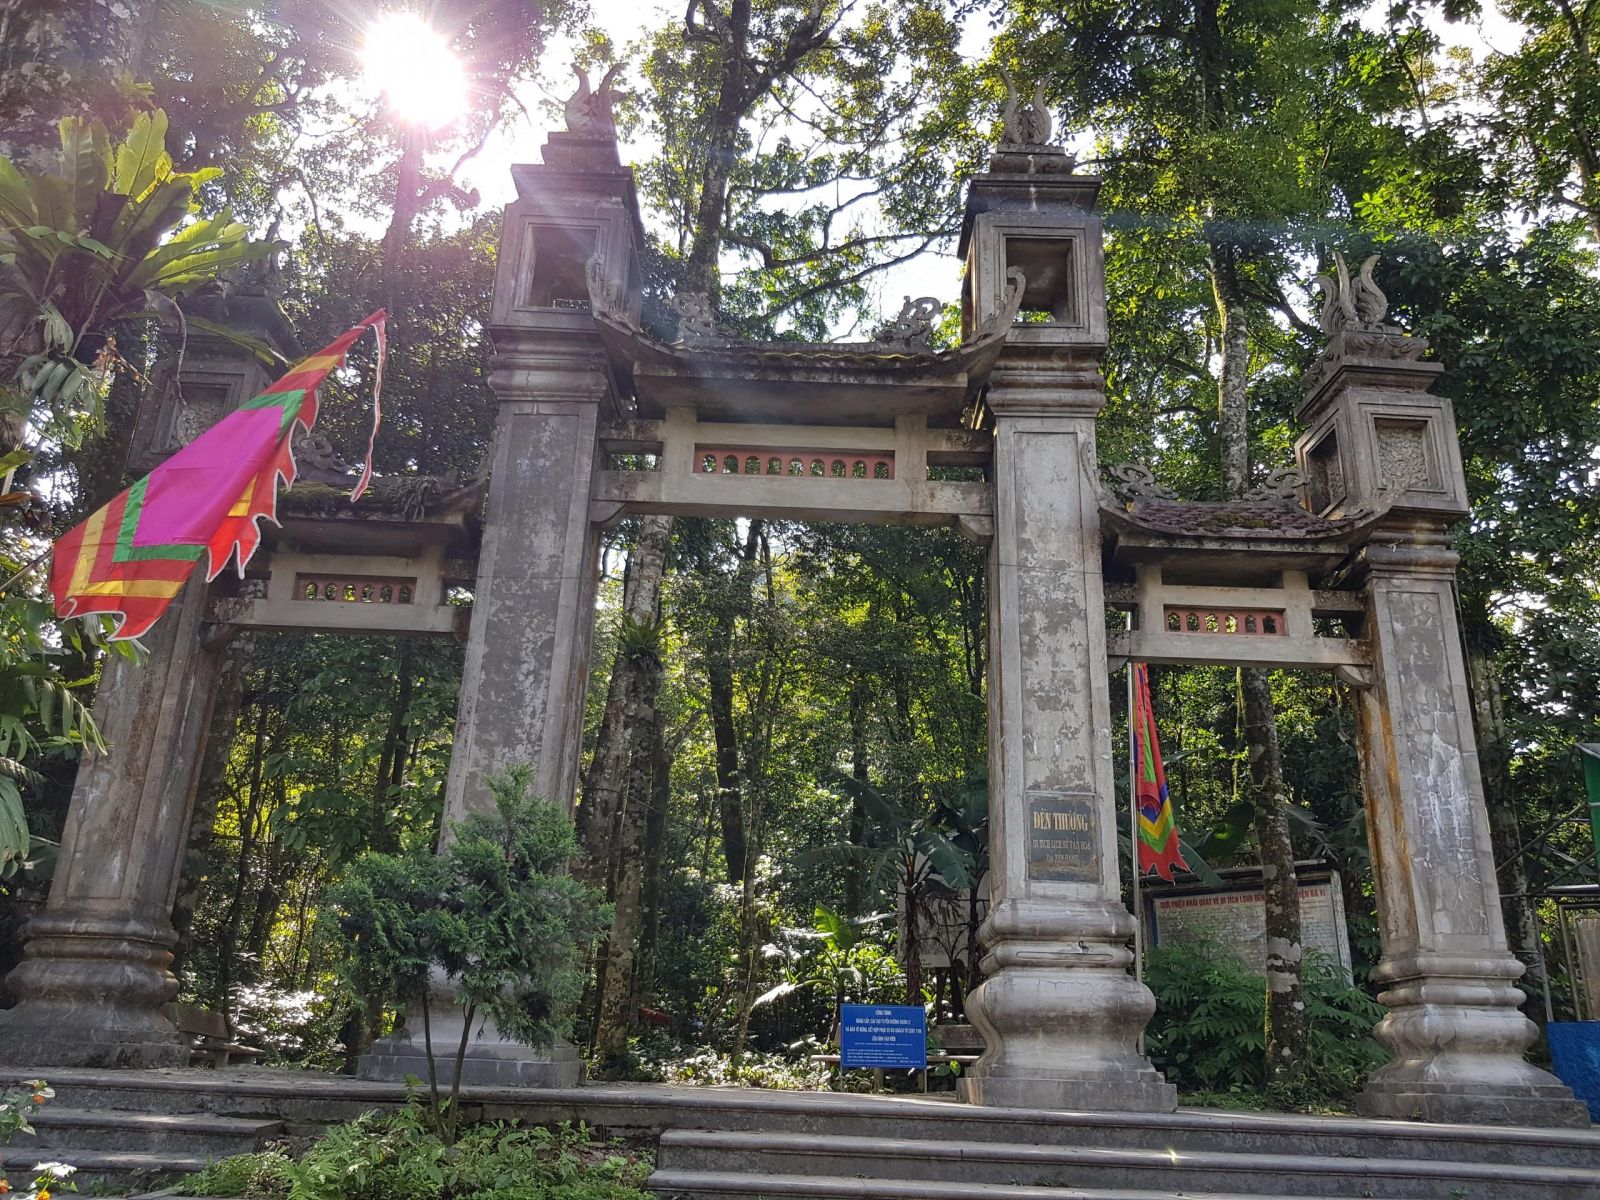 Ba Vi entrance to Thuong temple